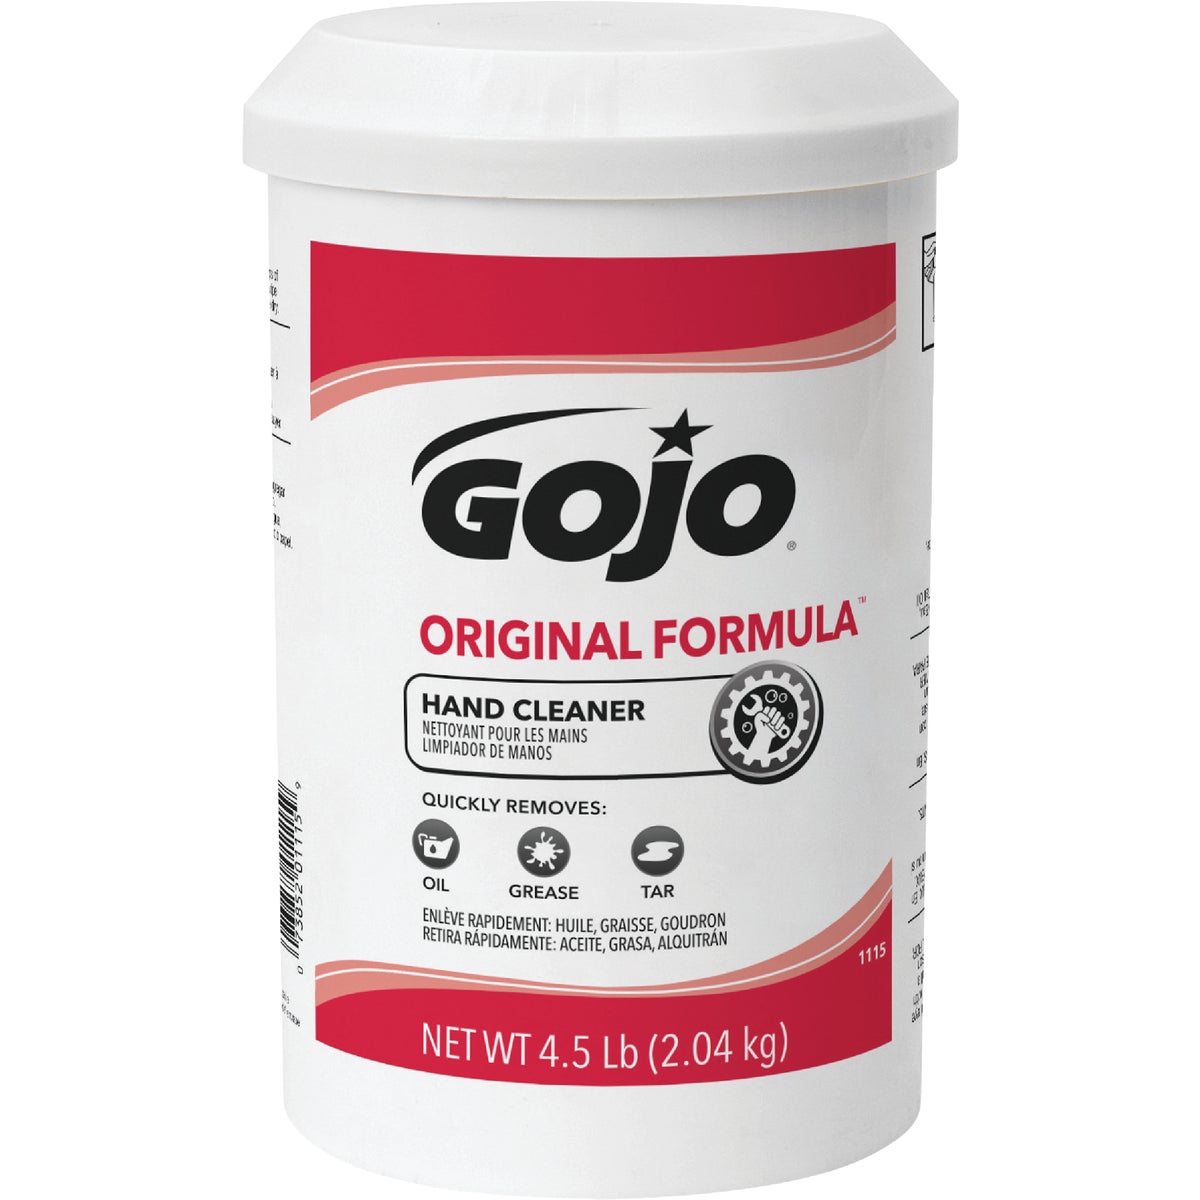 GOJO Original Formula Hand Cleaner